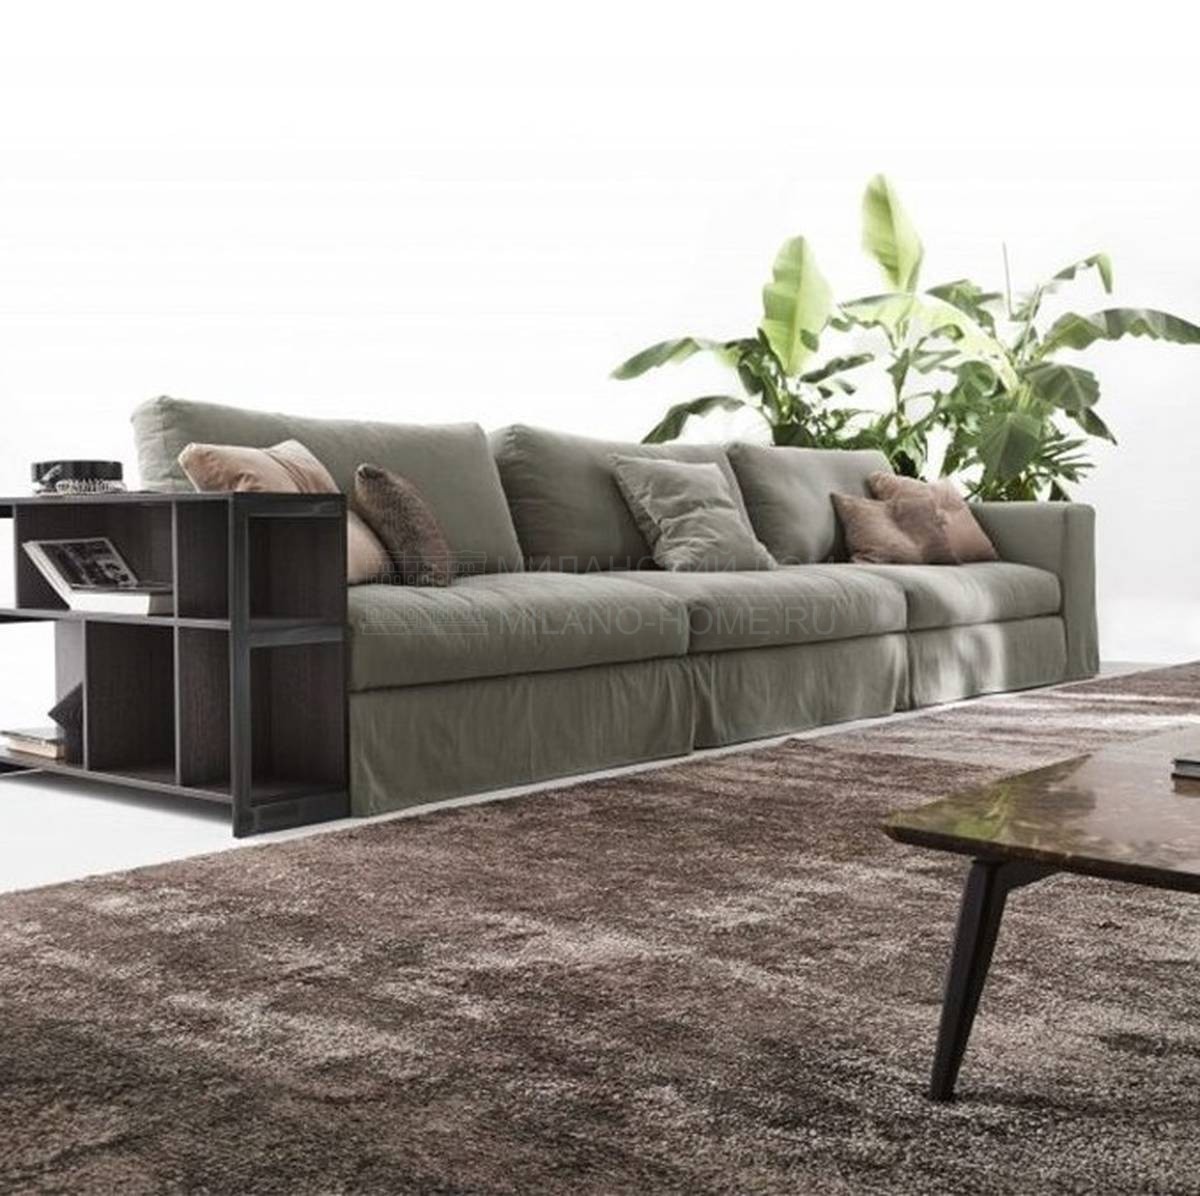 Модульный диван Urban Elegance из Италии фабрики DITRE ITALIA